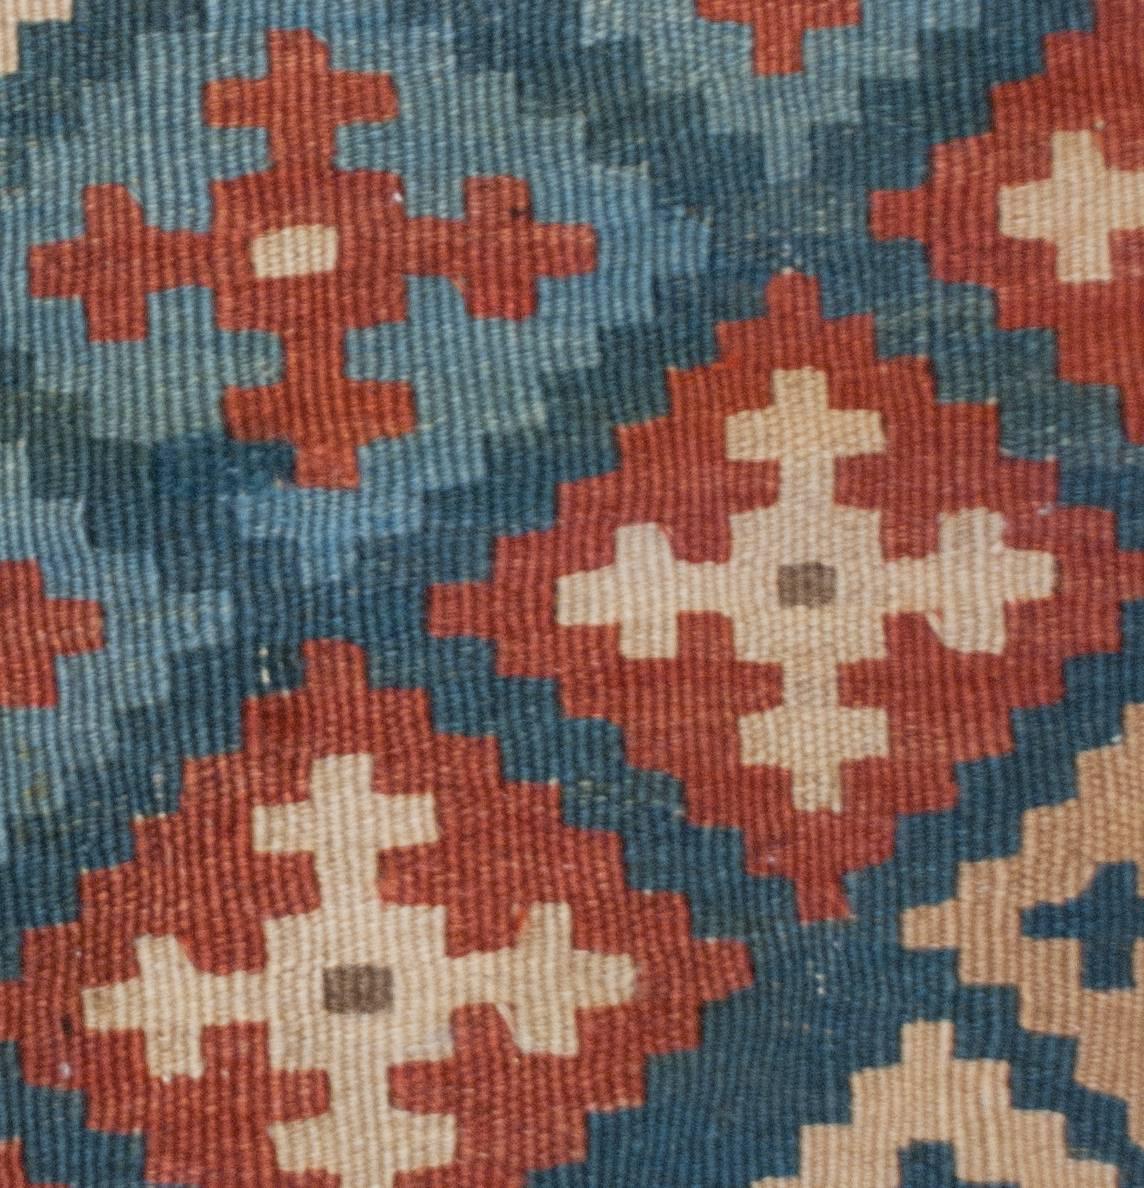 Ein wunderbarer Schahsavan-Kilim-Teppich aus dem frühen 20. Jahrhundert mit einem traditionellen mehrfarbigen Rautenmuster in Purpur, Salbeigrün, Indigo und Rosa, das sich in einem diagonalen Streifen über das Feld zieht. Die Bordüre ist breit mit